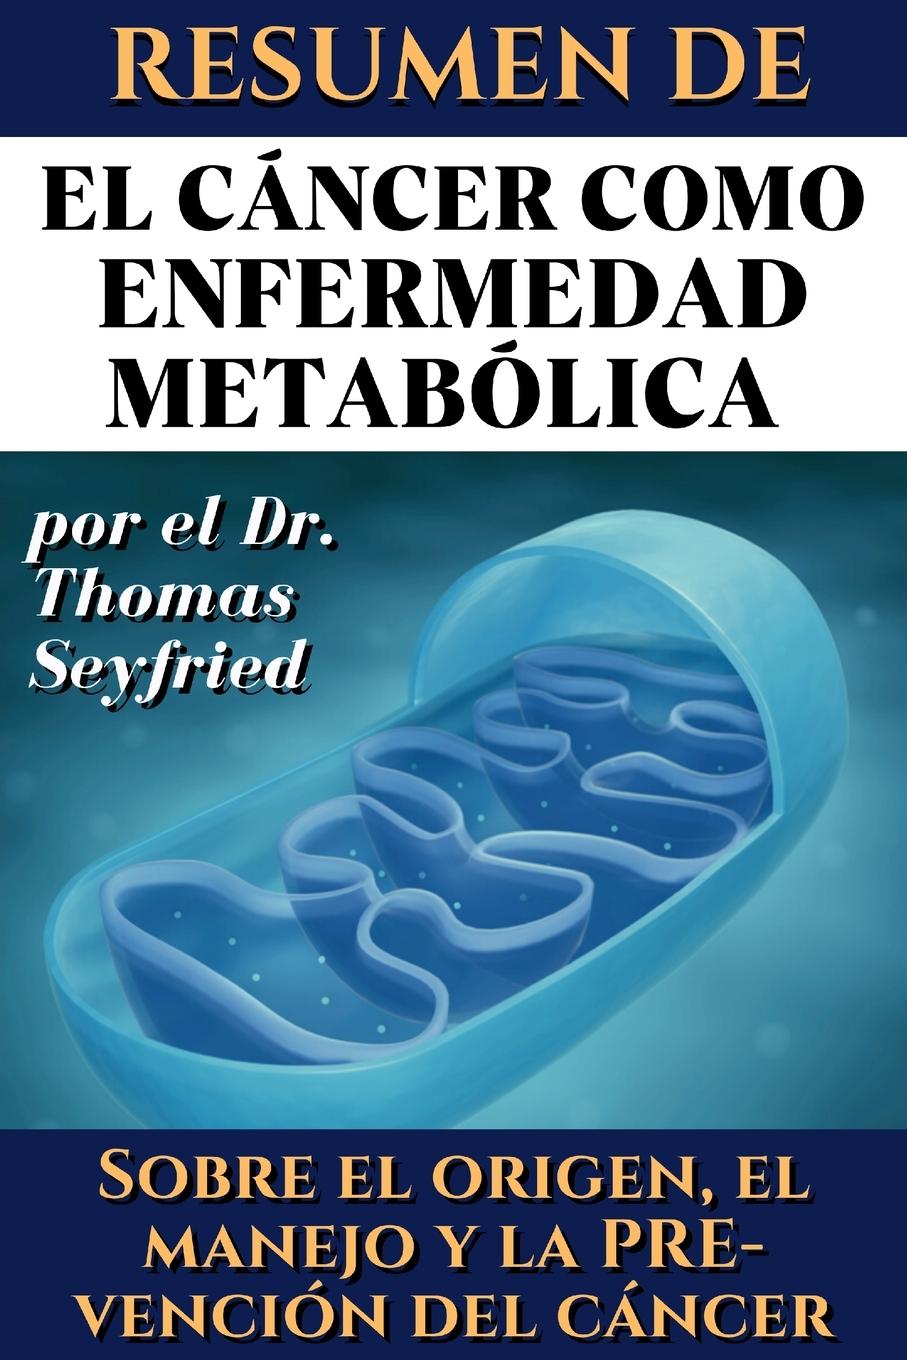 Book Resumen de El cáncer como enfermedad metabólica por el Dr. Thomas Seyfried Thomas Seyfried